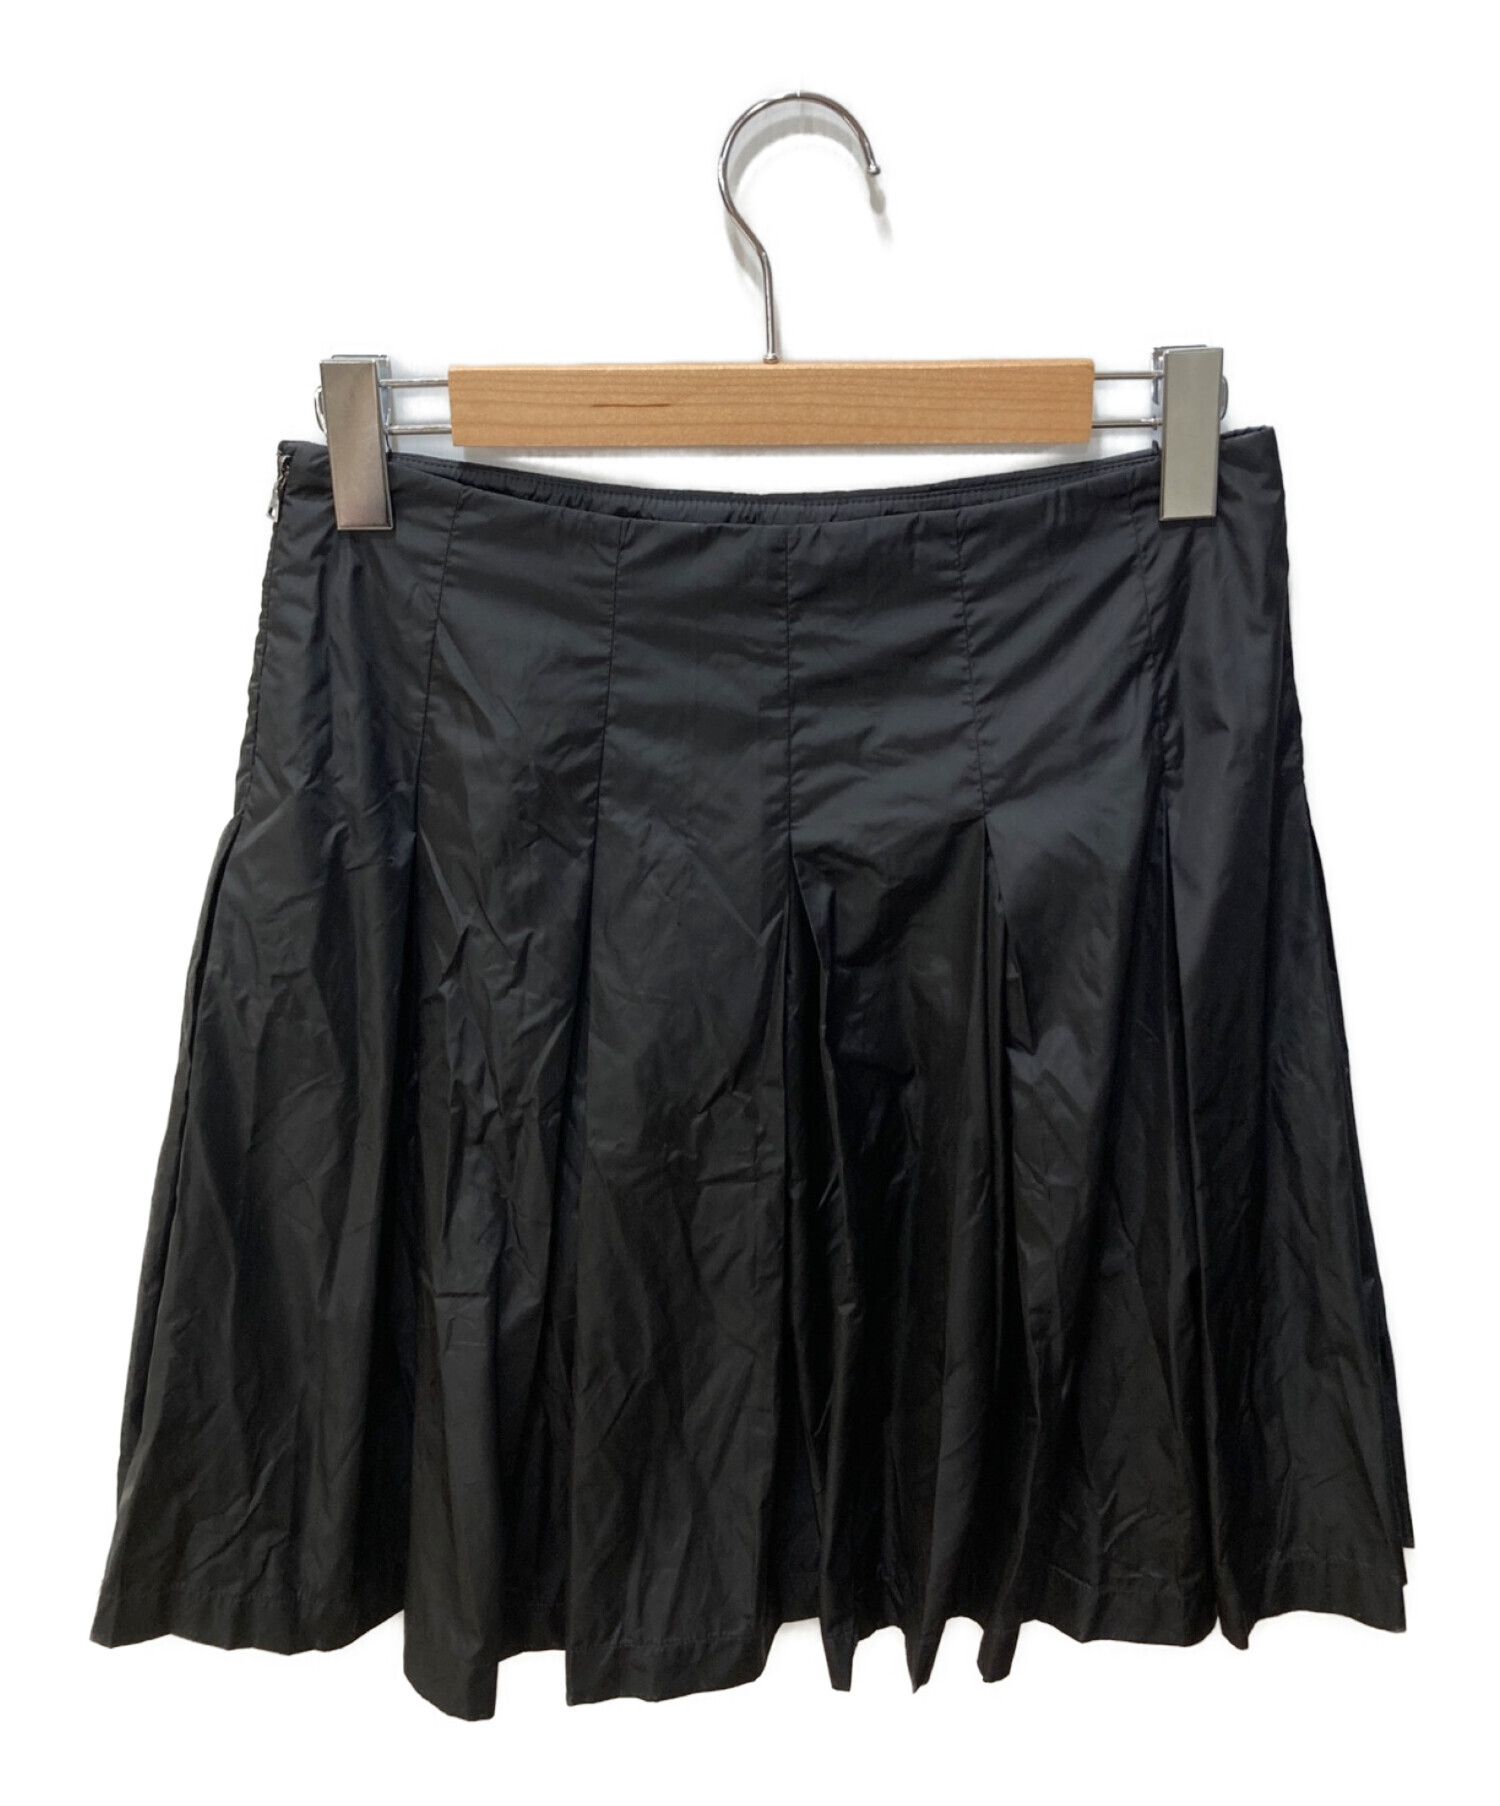 PRADA ナイロンスカート Size38